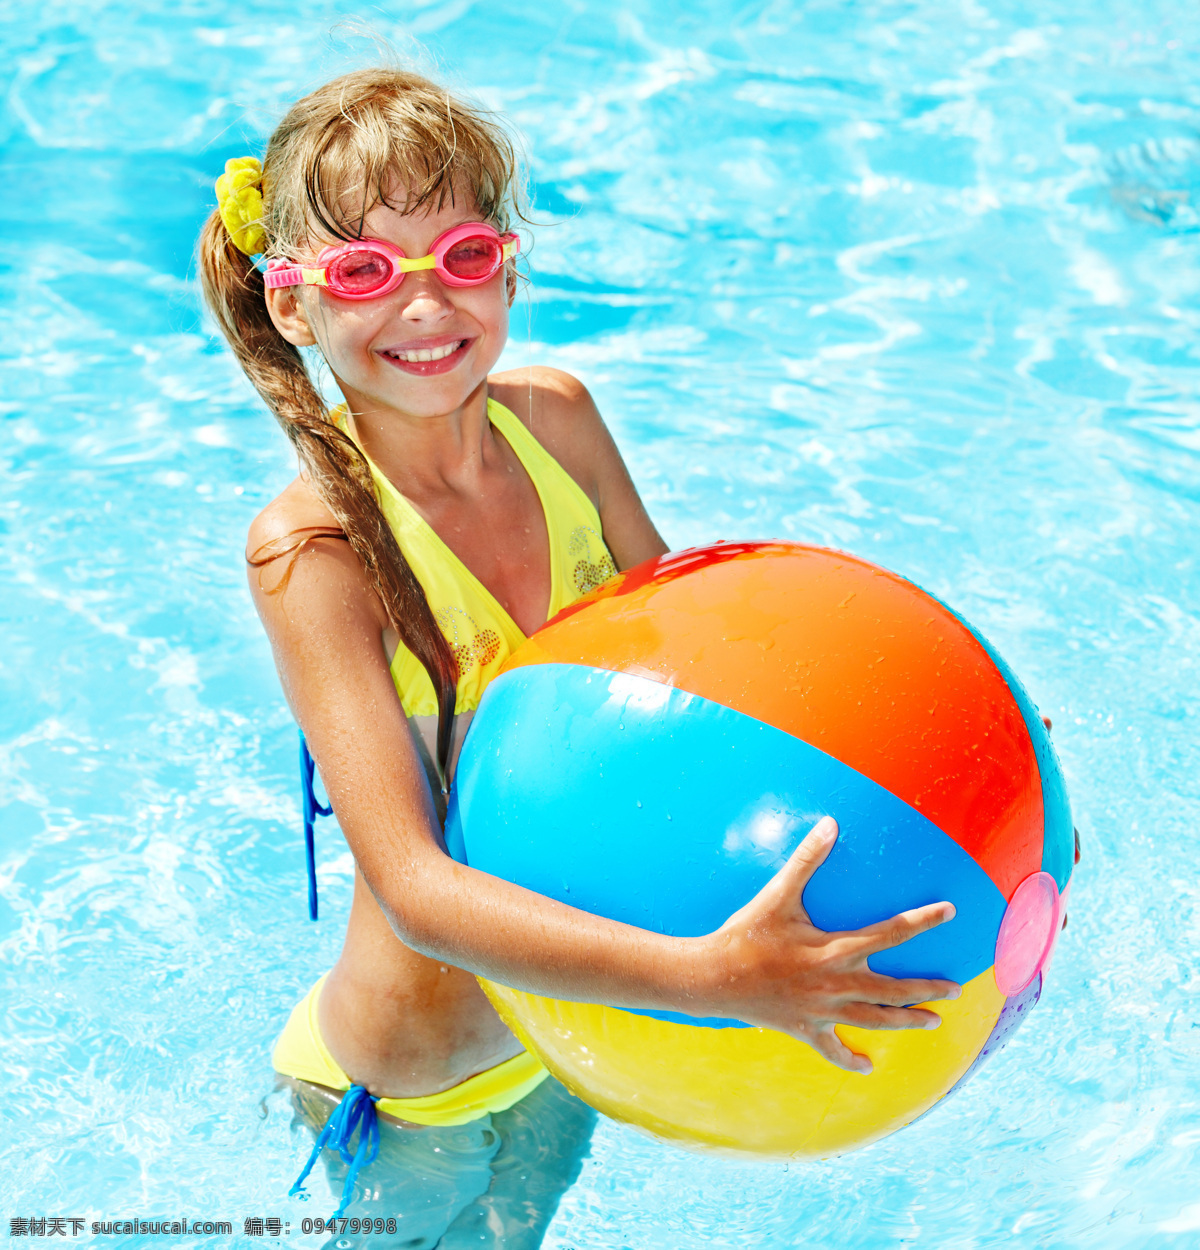 游泳 小女孩 儿童暑假 外国儿童 可爱 小孩 孩子 潜水 儿童图片 人物图片